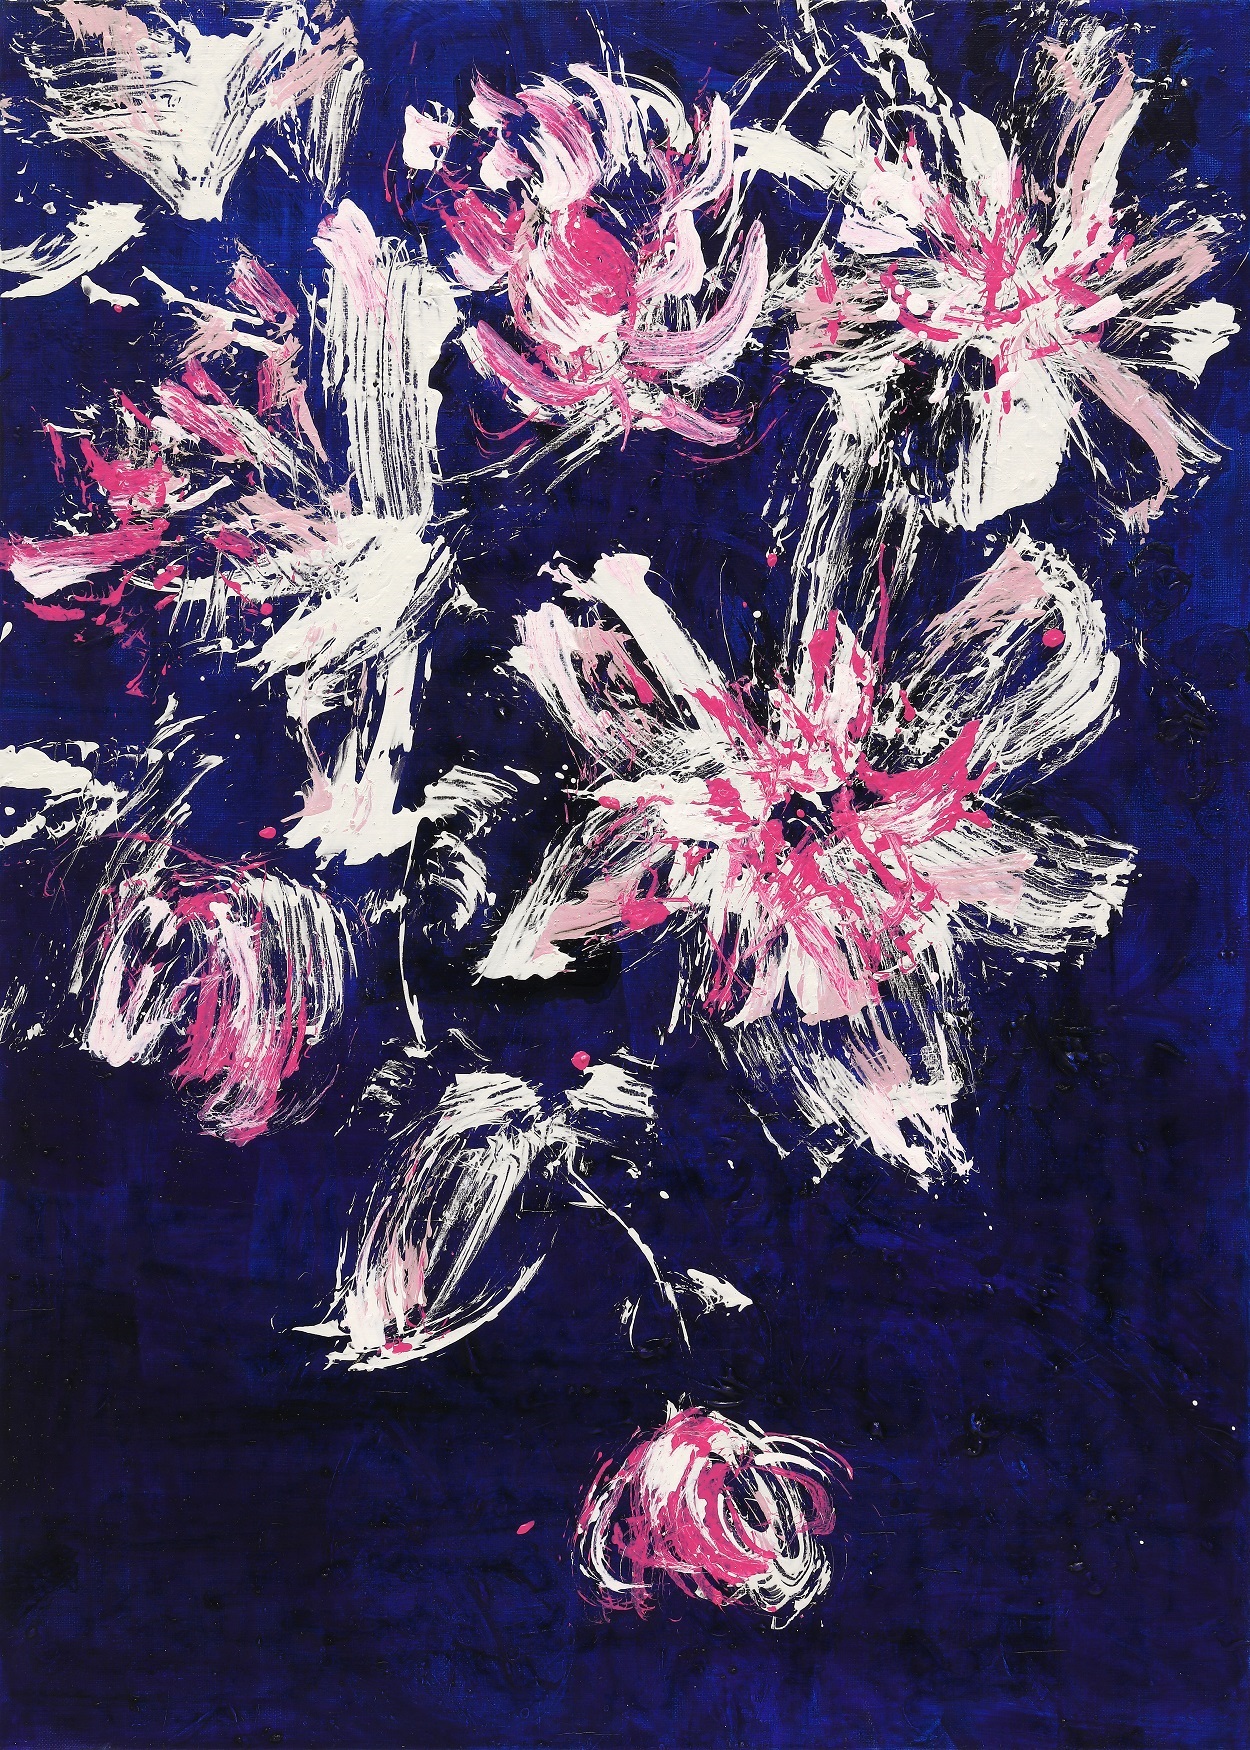 안영나 작가(Ahn Young Na)=Flower No Flower-기운생동, 91×65㎝ Acrylic On Canvas, 2020. 조선화랑 gallerychosun, 부스넘버 D04.